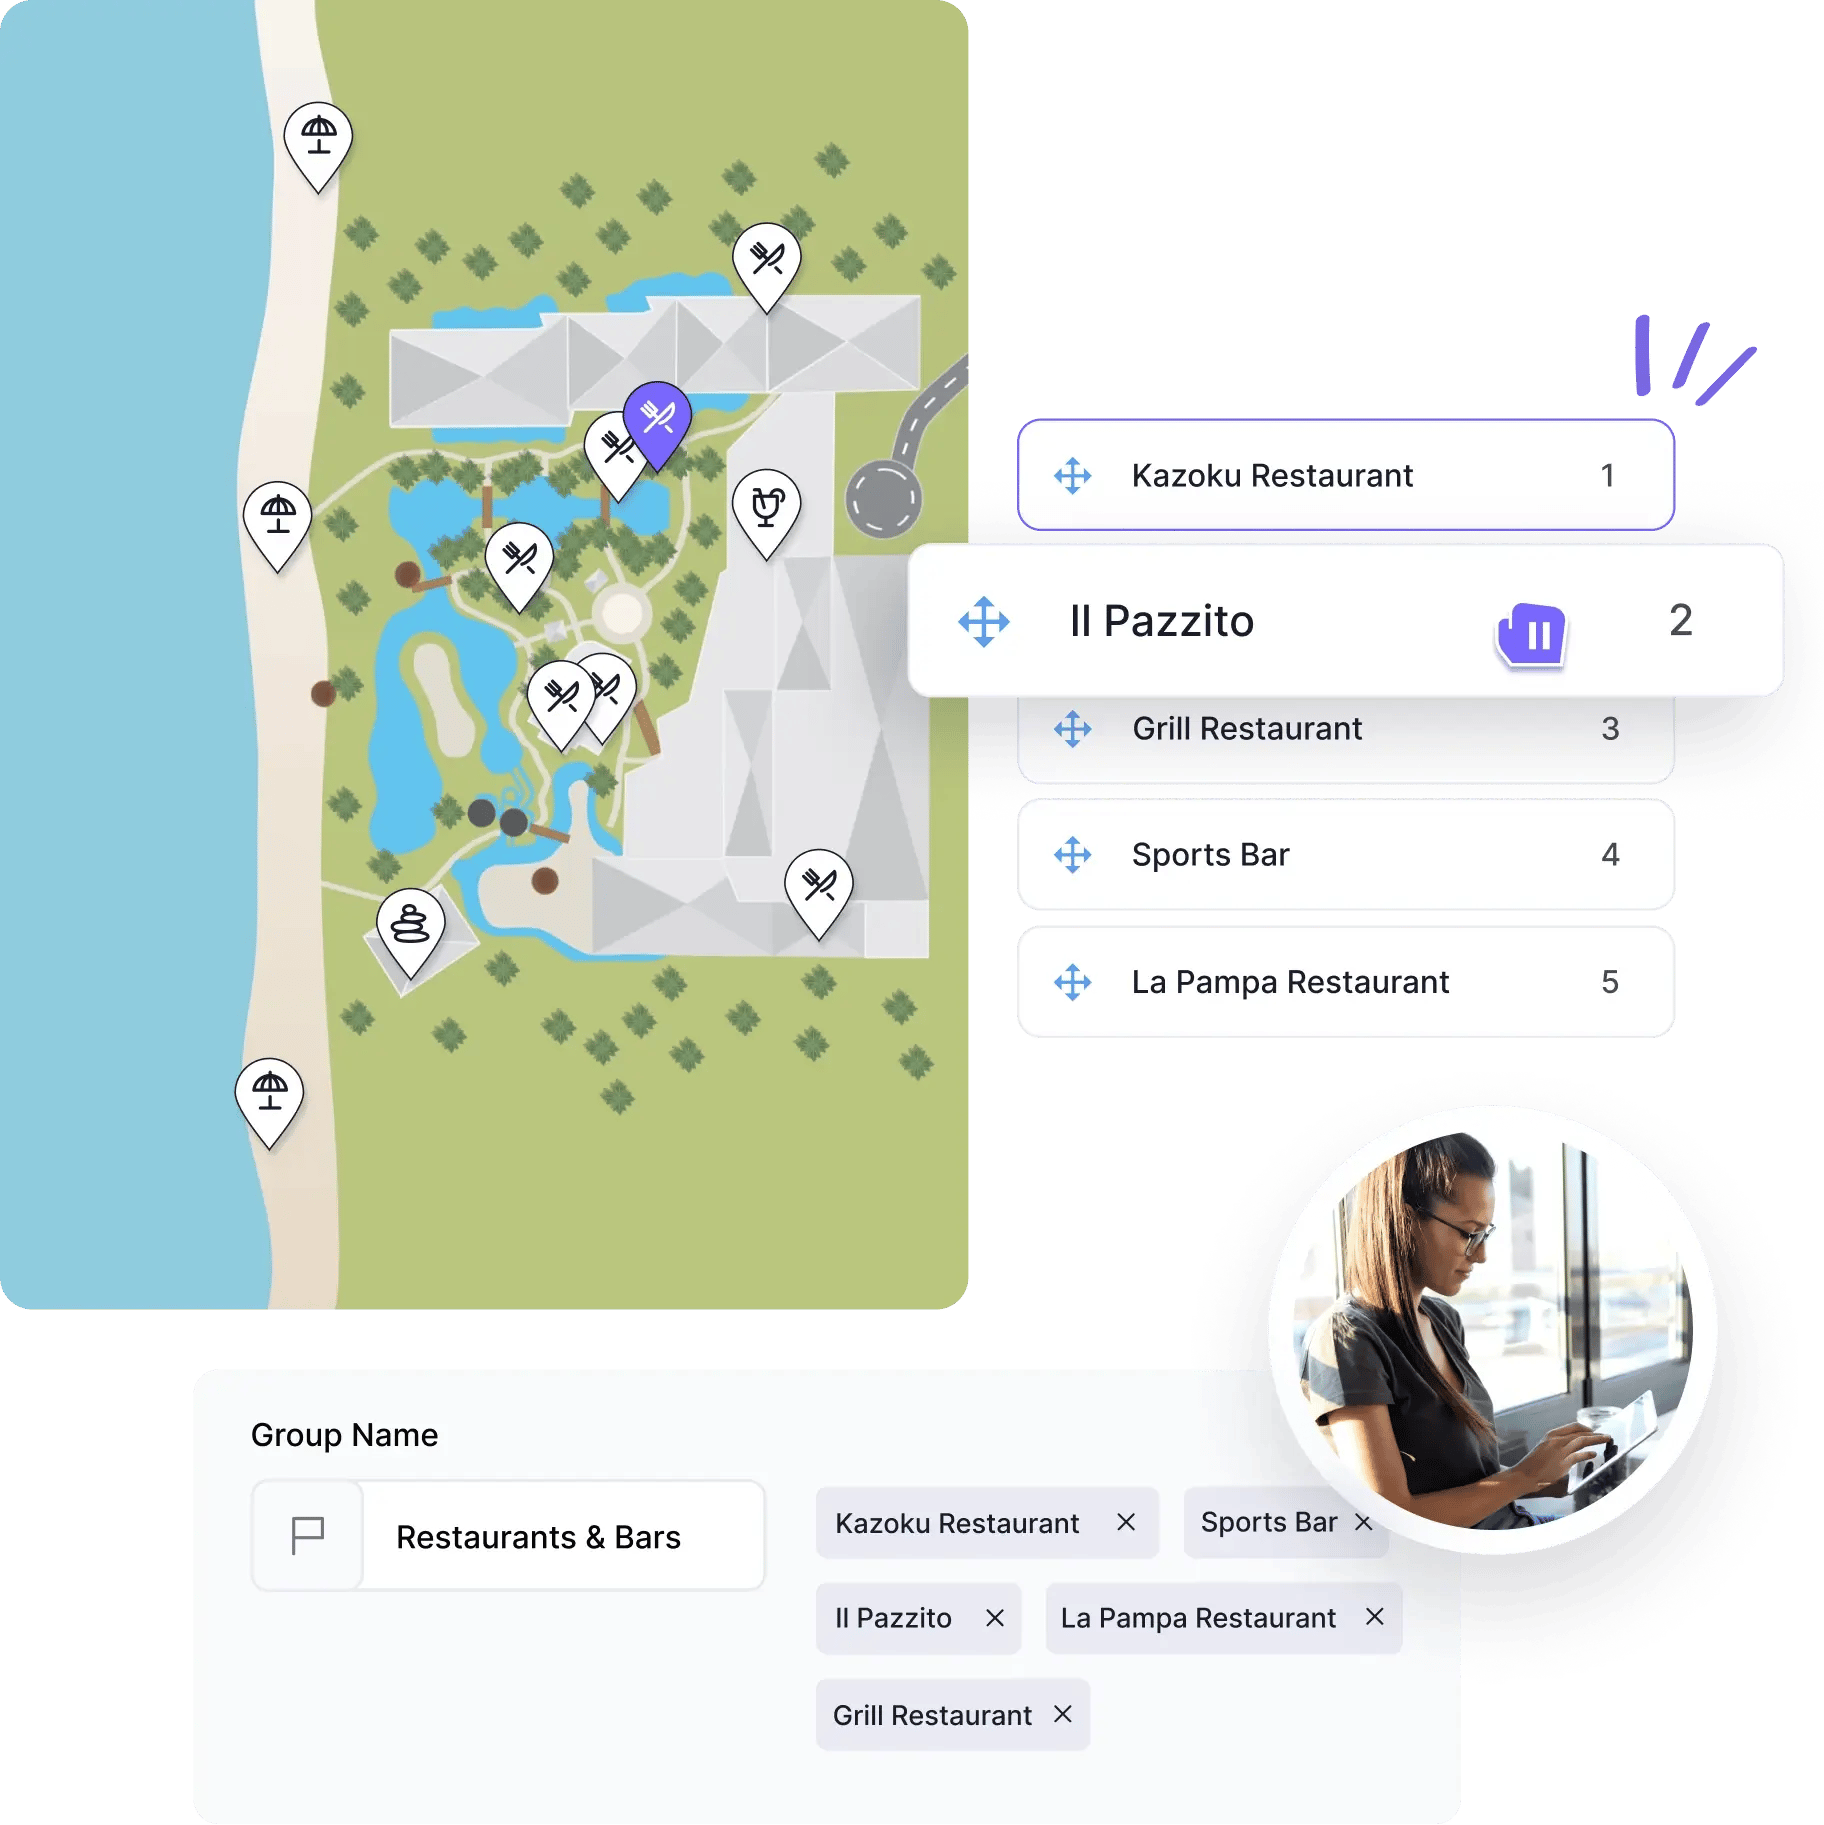 Mapa del hotel interactivo